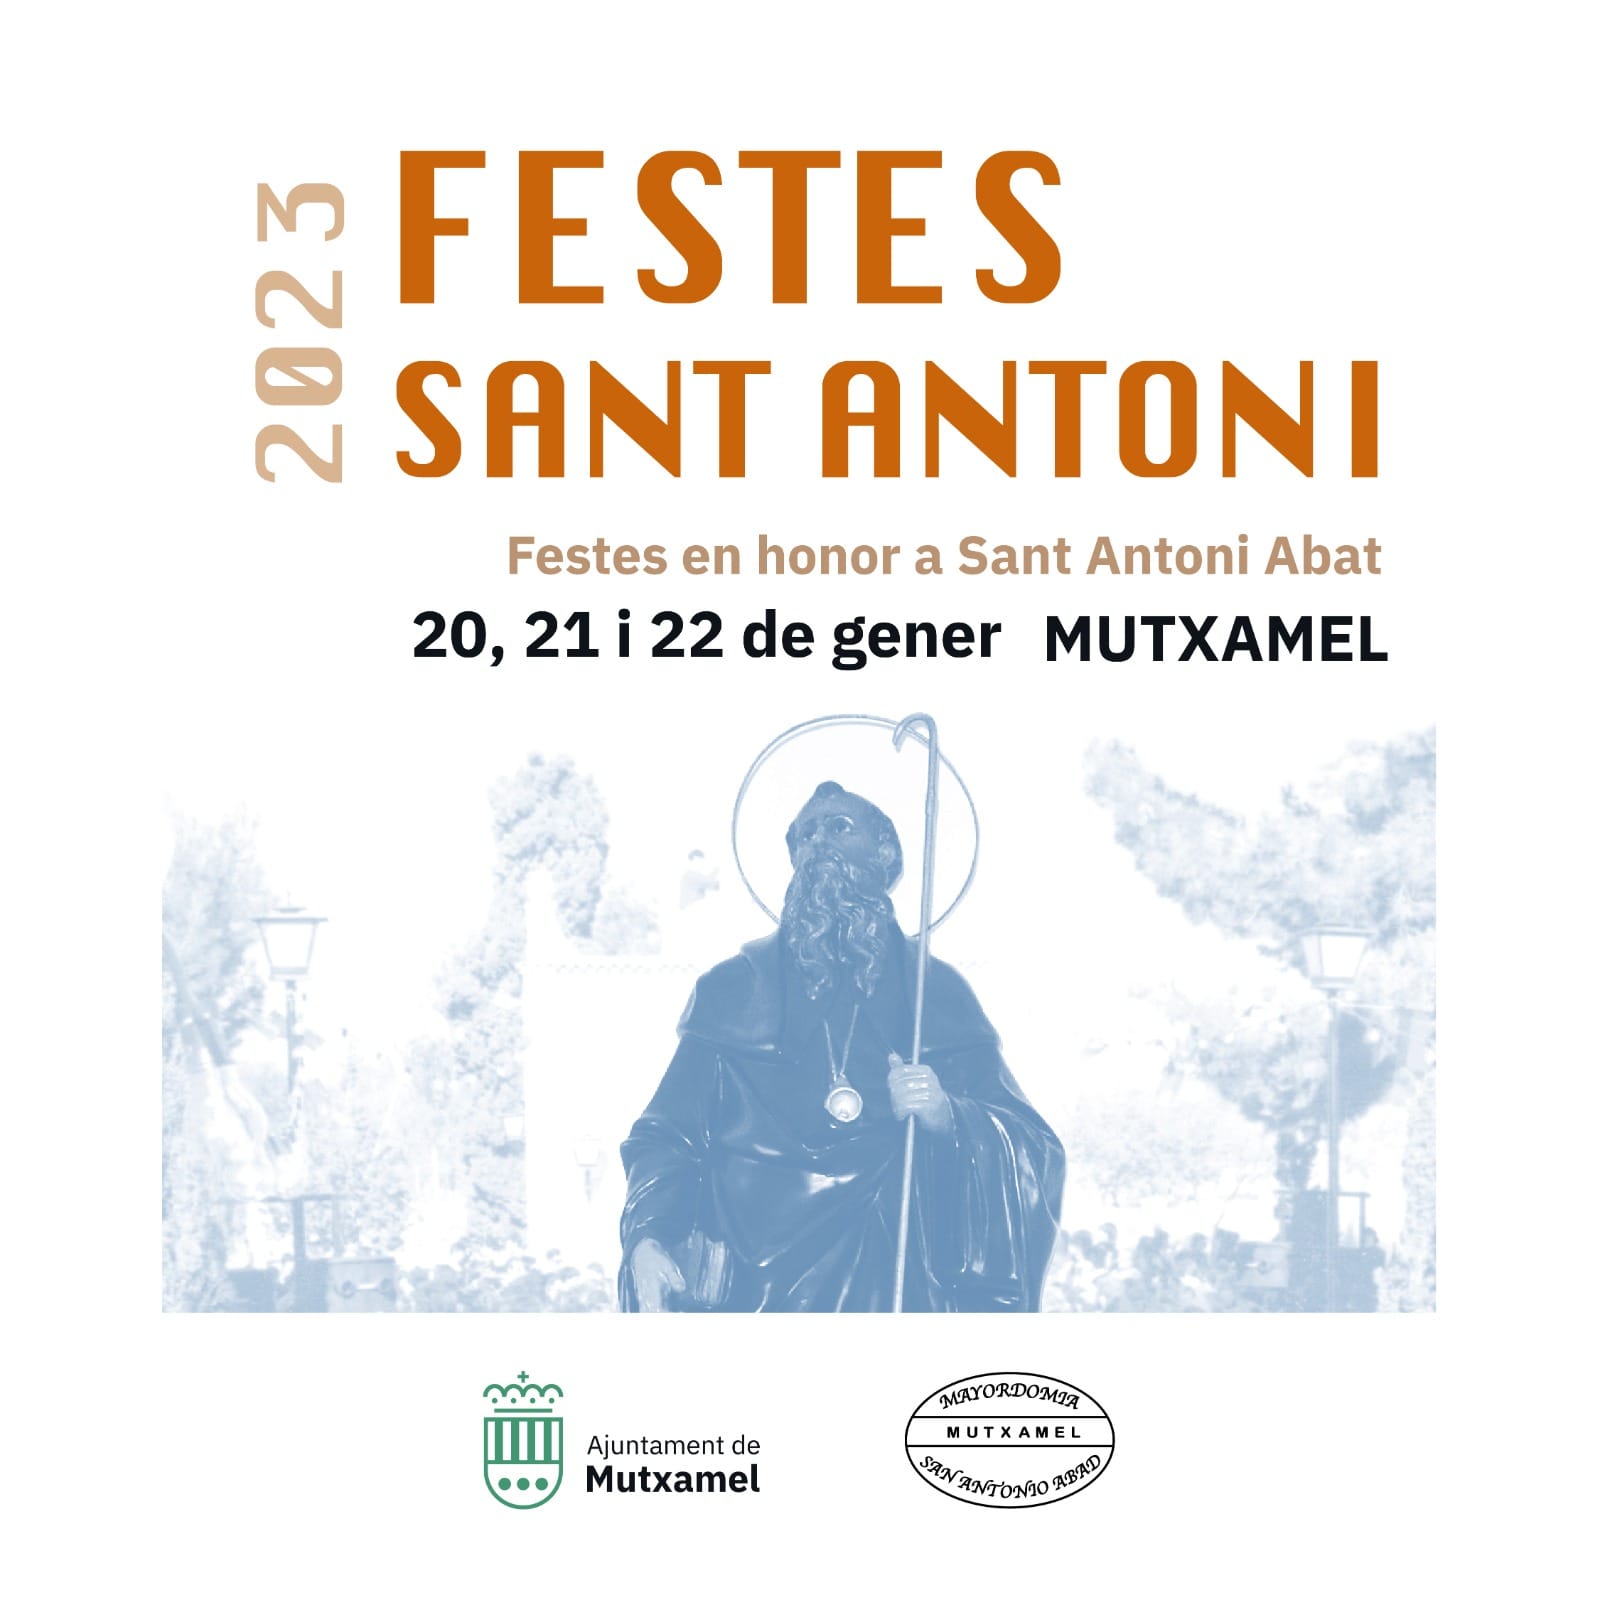 Comienzan las fiestas de Sant Antoni en Mutxamel Somos L'Alacantí